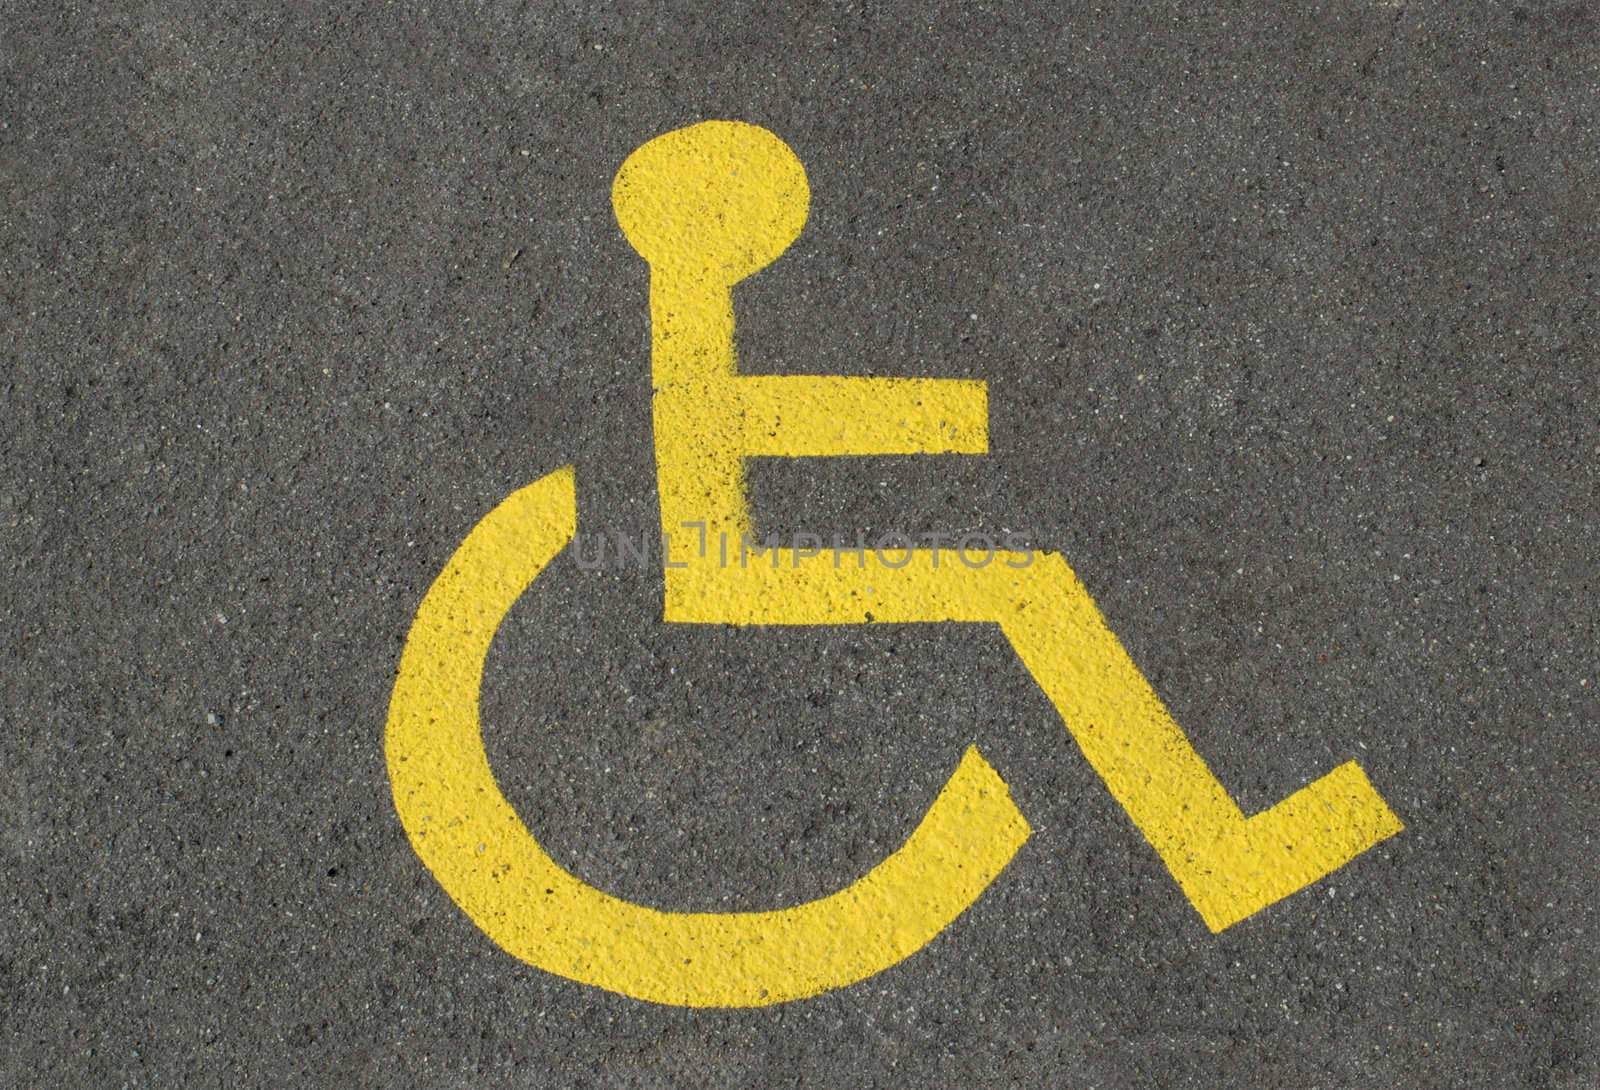 Disabled parking by Bateleur